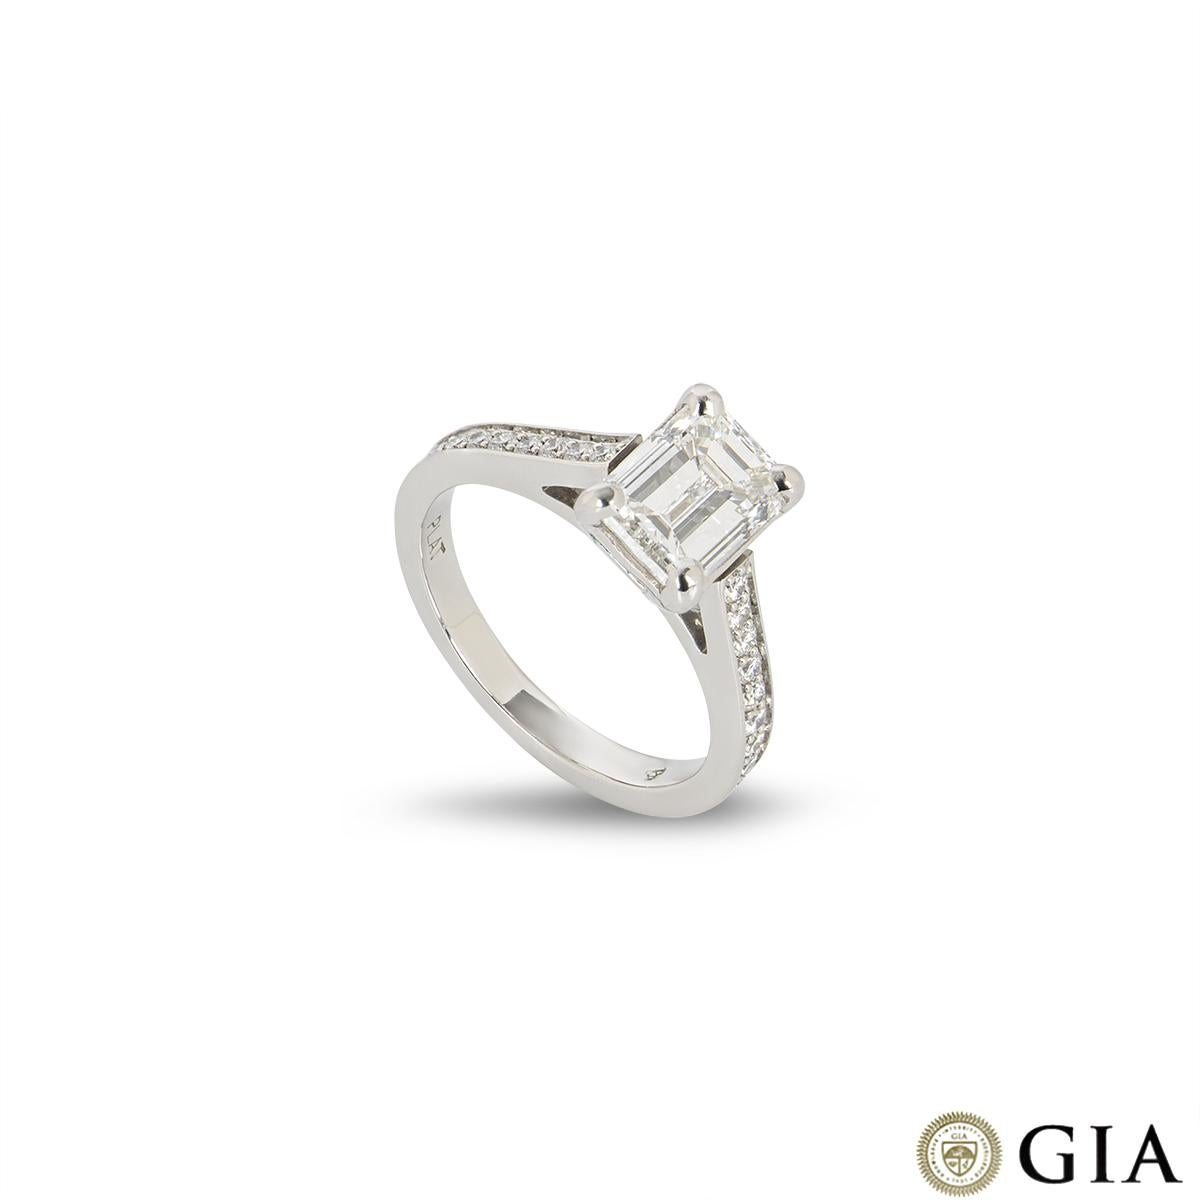 Ein schöner diamantener Verlobungsring aus Platin. Der Ring besteht aus einem Diamanten im Smaragdschliff mit einem Gewicht von 1,51 ct, Farbe F und Reinheit VVS2 in einer Fassung mit 4 Krallen. Ergänzt wird dieser zentrale Diamant durch 9 runde